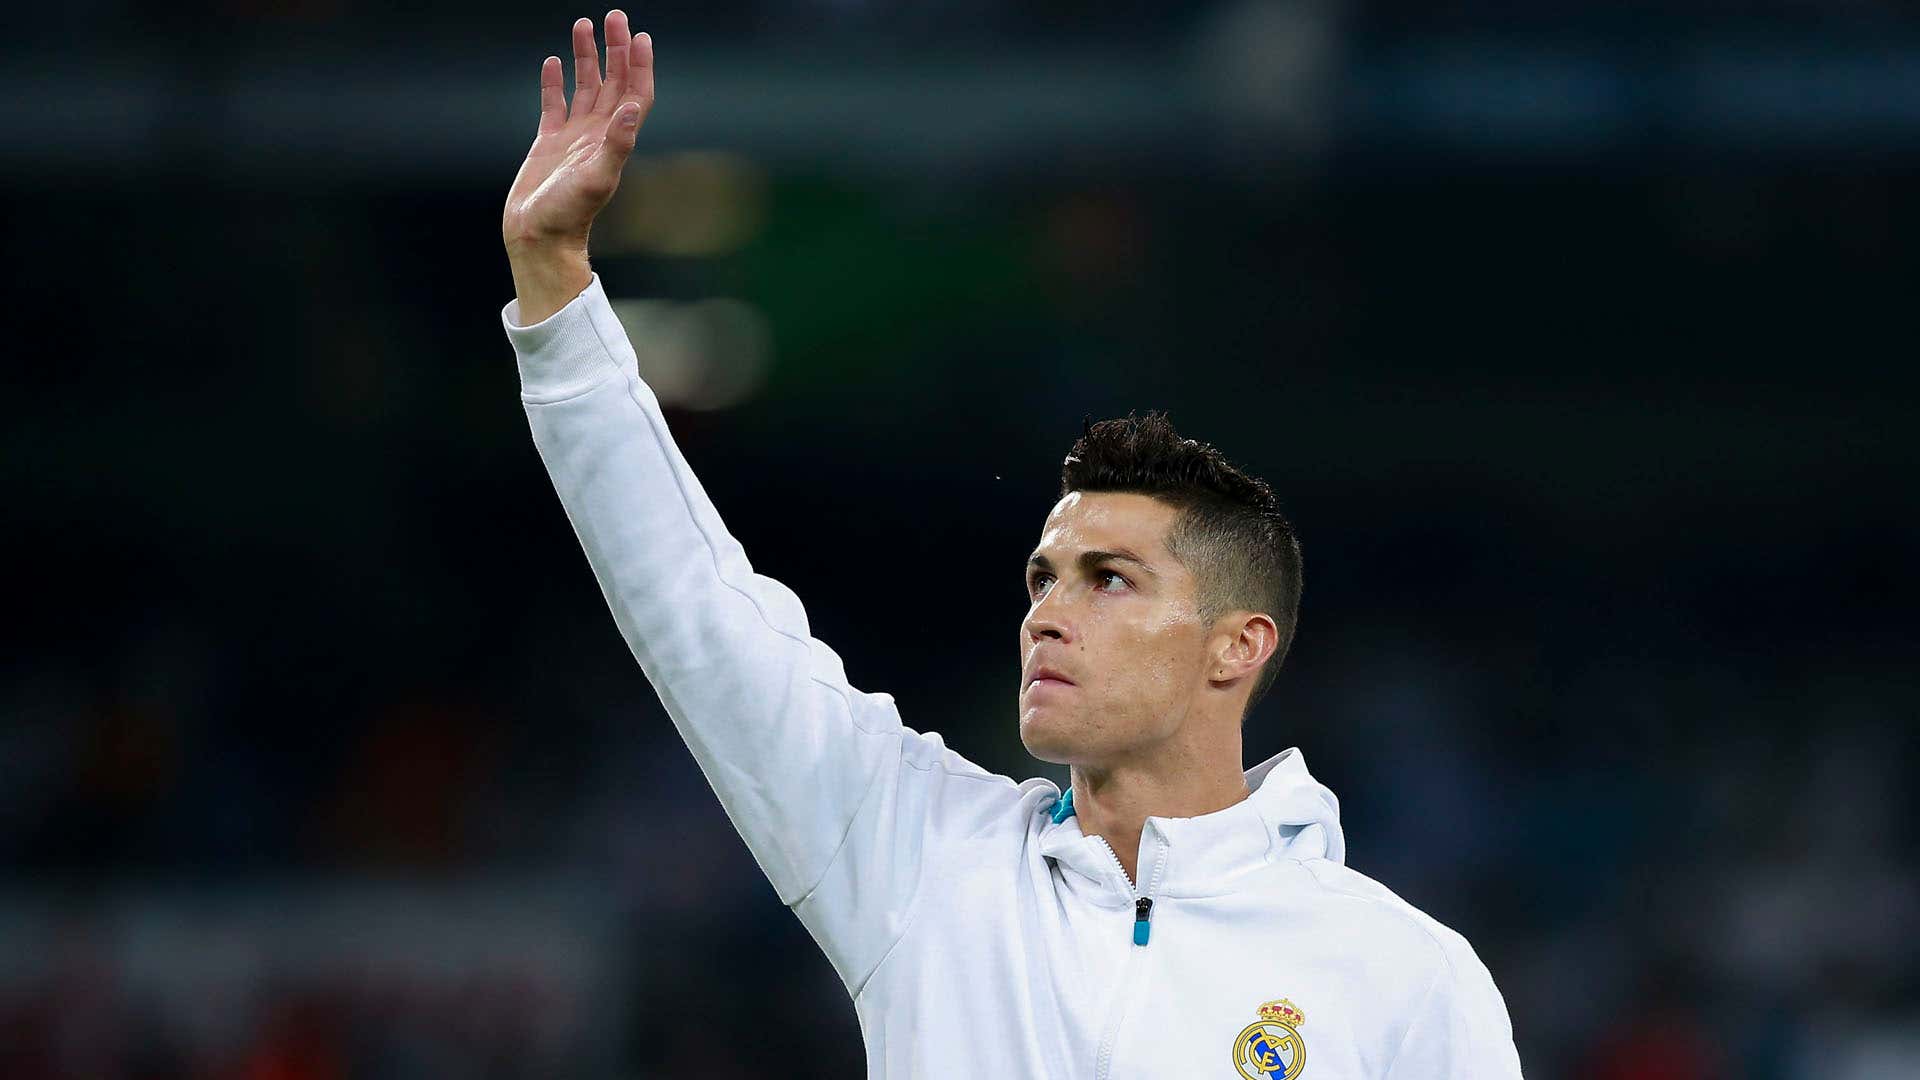 Hãy cùng đồng đội tại Real Madrid khám phá hành trình vô địch cùng Ronaldo. Với những pha bóng tuyệt đẹp và những chiến thắng nghẹt thở, Ronaldo không chỉ là một cầu thủ xuất sắc mà còn là một đồng đội đáng tin cậy.